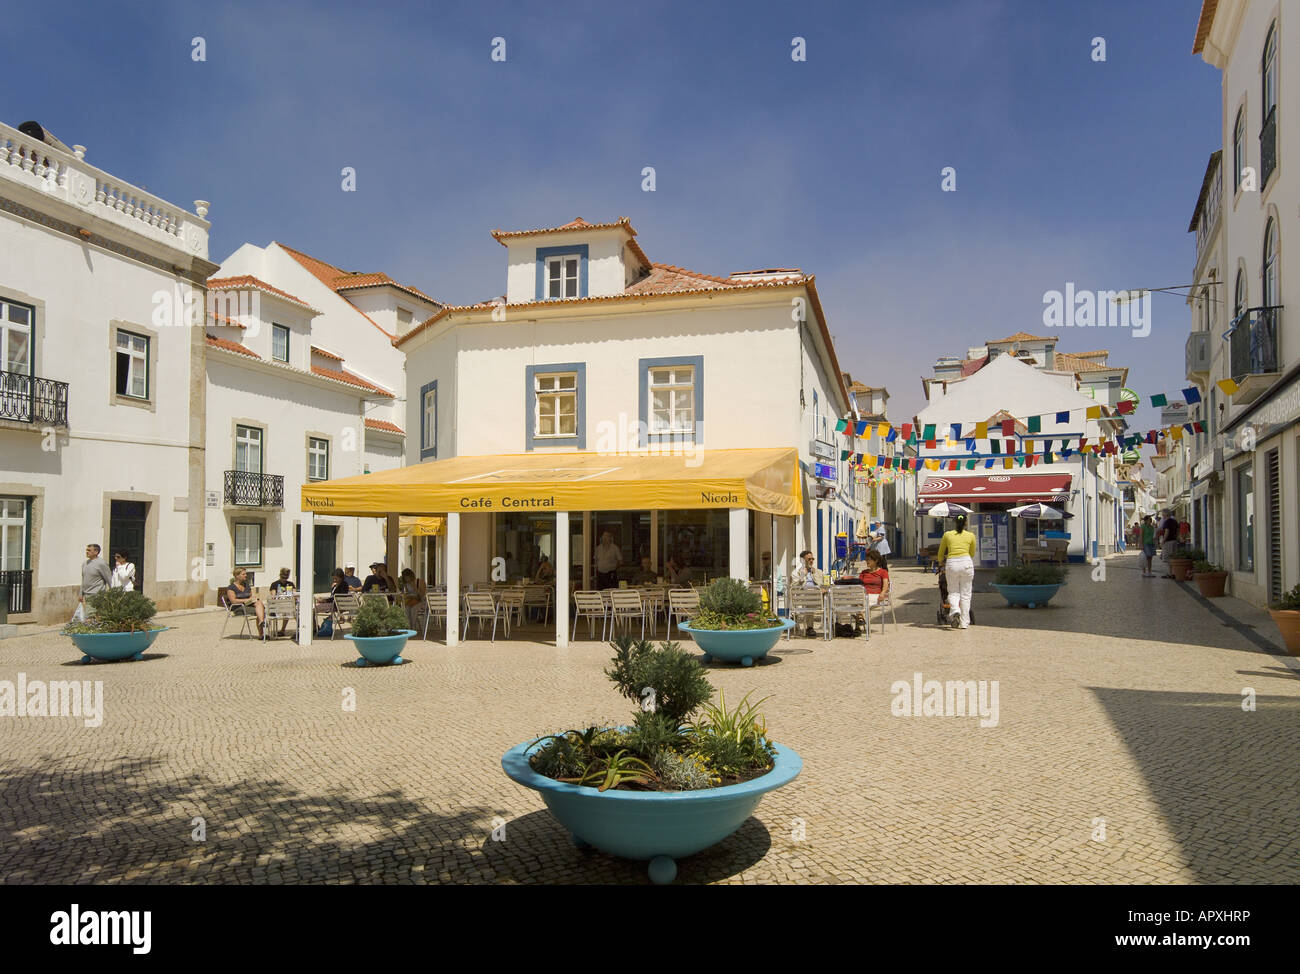 Portugal, costa de Lisboa, Ericeira, café in central square Stock Photo